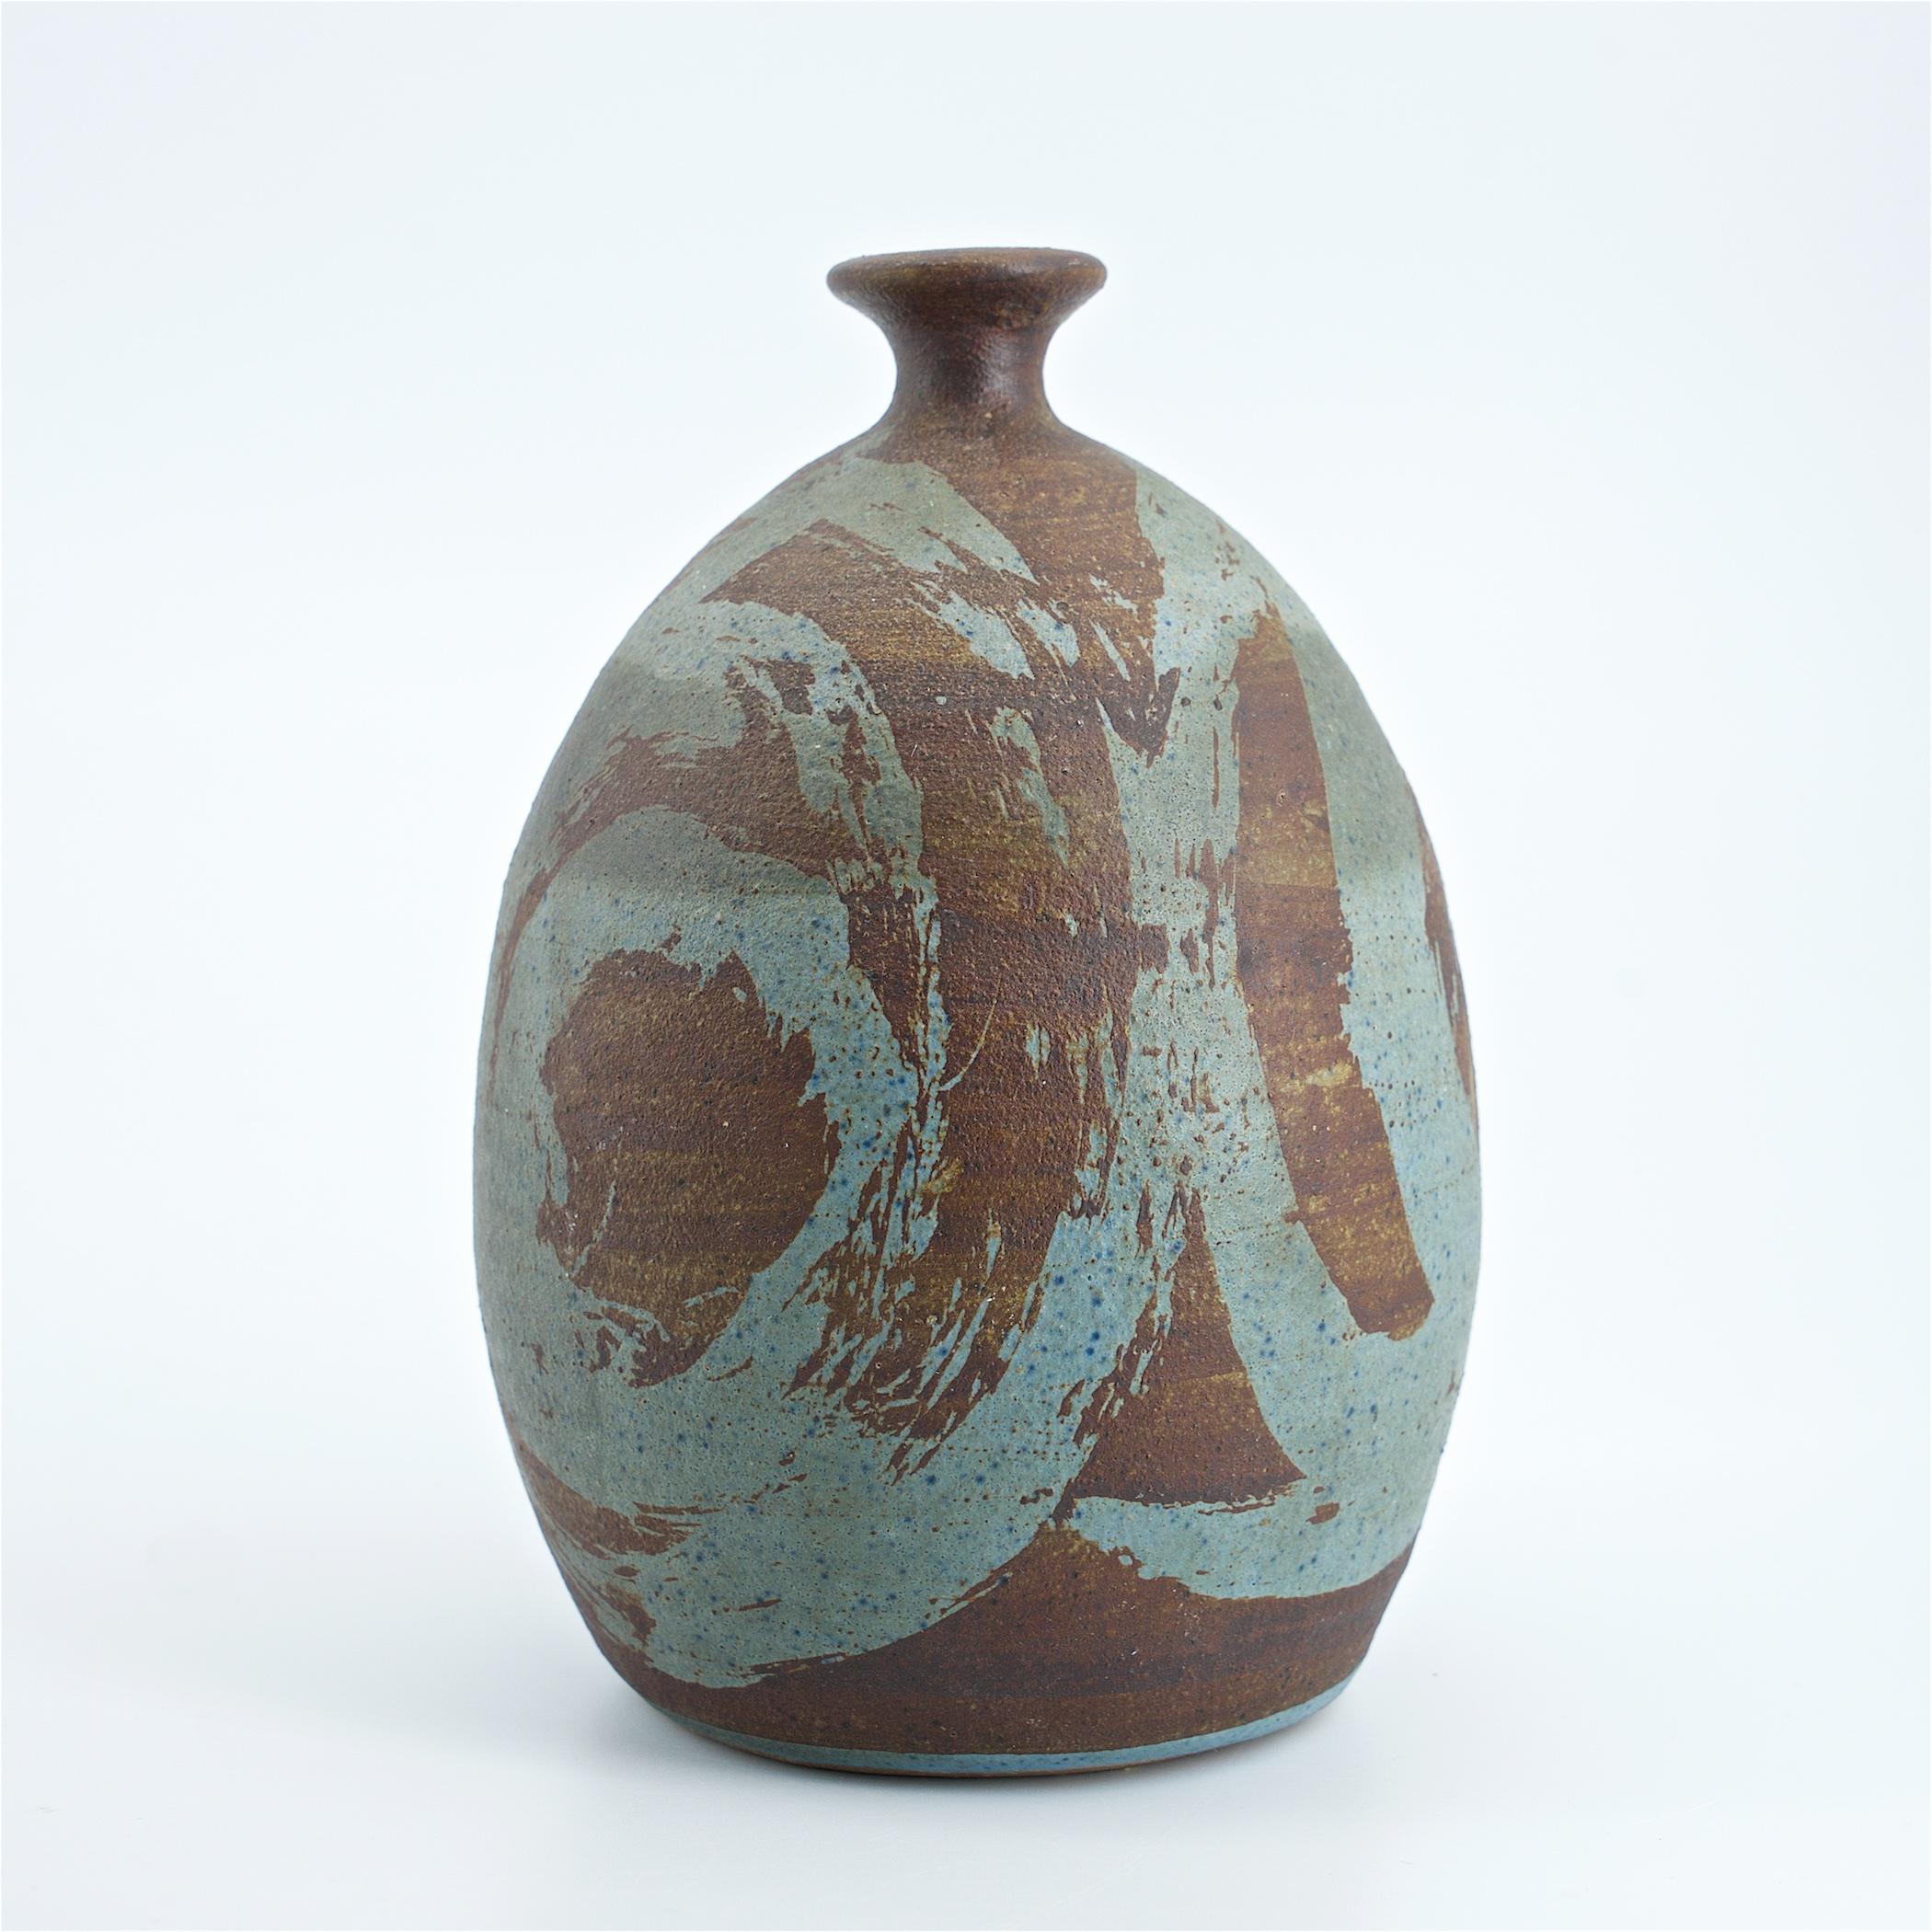 Eine wunderbare Studio gedreht, und unterzeichnet Keramik Vase. Wir haben keine Informationen über den Hersteller, aber es fängt wirklich einige der sammelwürdigen Designaspekte der Mid-Century-Ära ein.